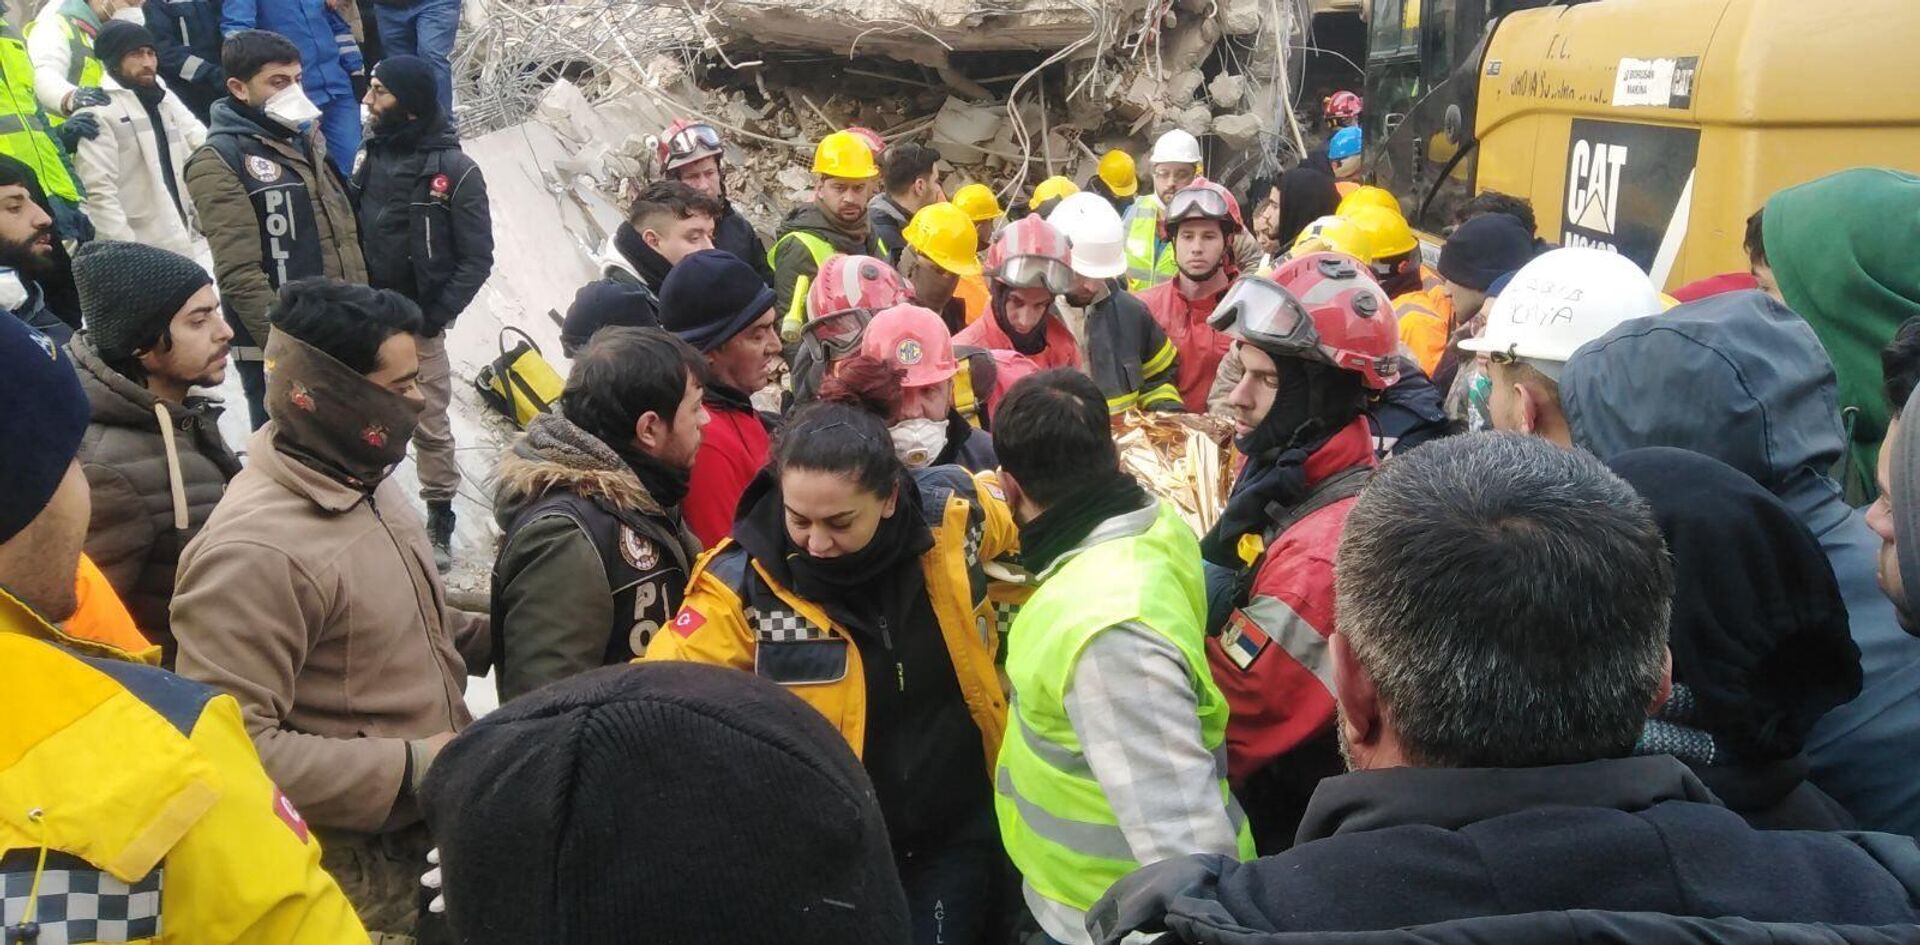 Srpski vatrogasci-spasioci spasili su sedamnaestogodišnju devojku koja je 108 sati bila pod ruševinama sedmospratne zgrade u Turskoj. - Sputnik Srbija, 1920, 10.02.2023